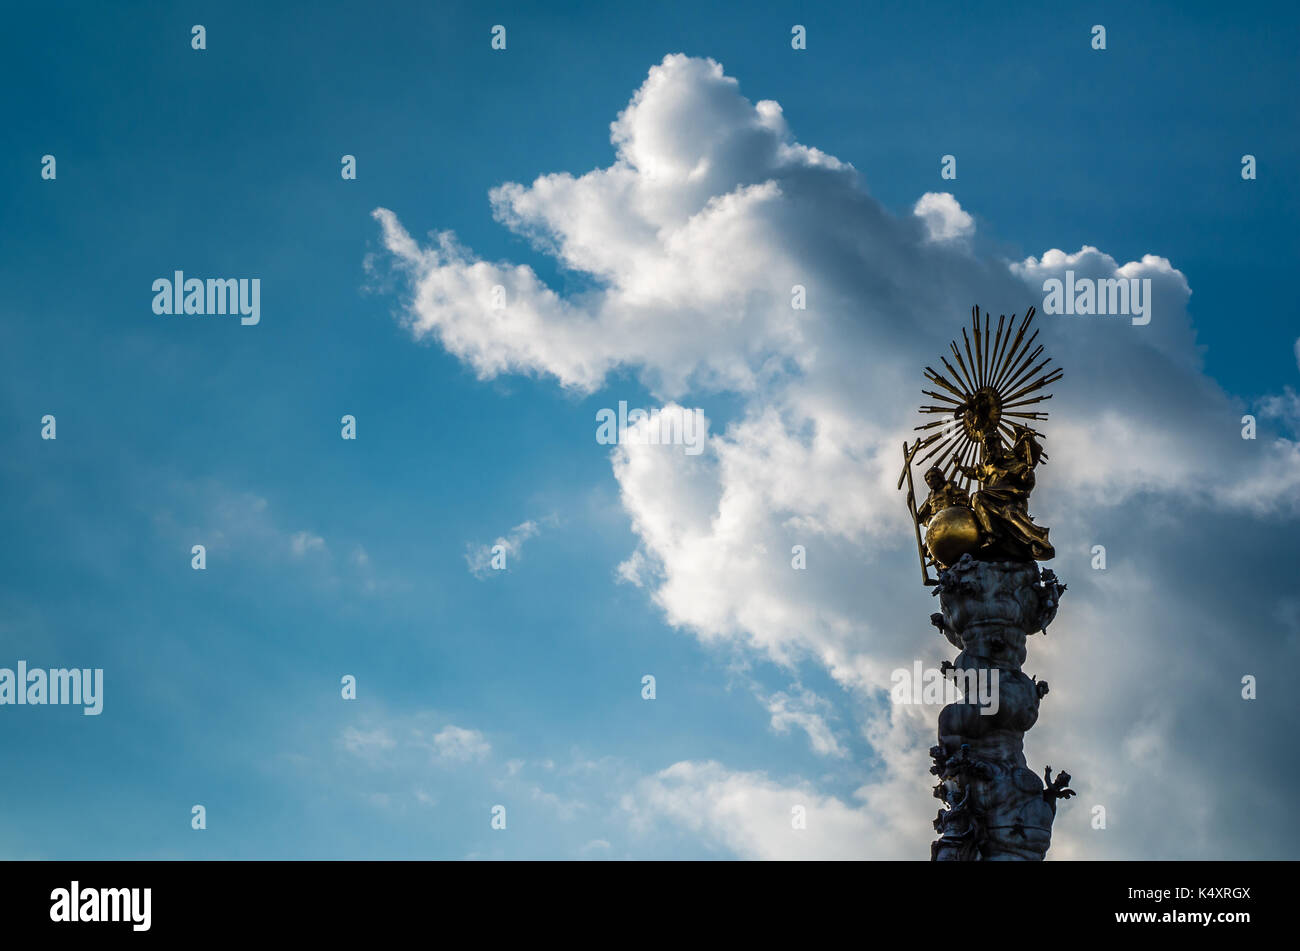 Urbane Kunst/Architektur/Landmarke auf Hauptplatz Linz, Österreich. Statue/Denkmal mit einem blauen Himmel und Wolken. Stockfoto